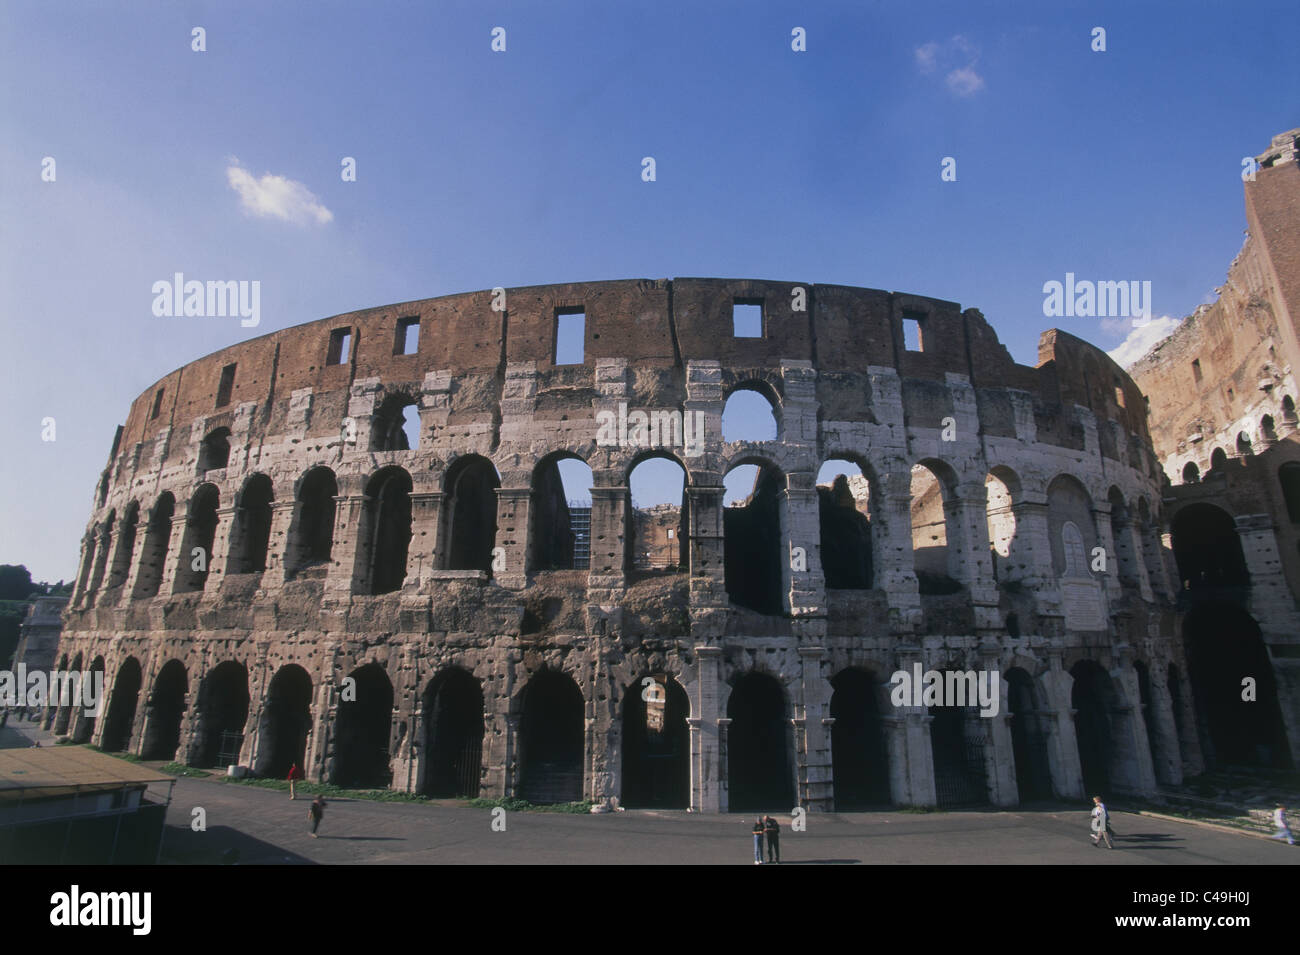 Photographie de la Colisée romain dans la ville moderne de Rome Banque D'Images